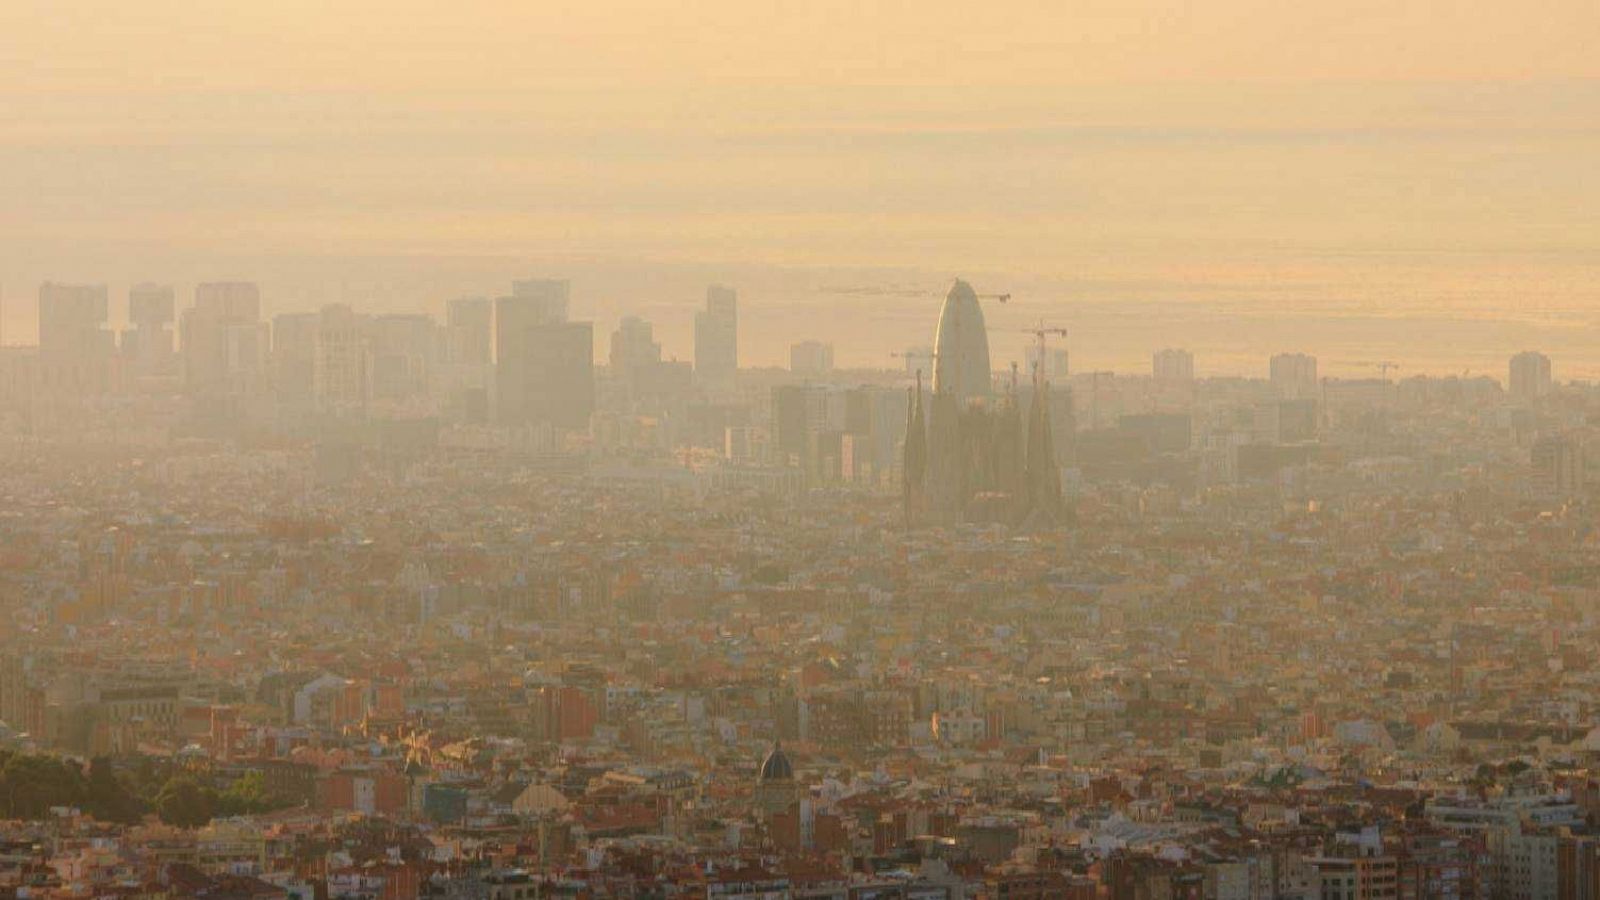 Imatge del nou episodi de pols en suspensió a la ciutat de Barcelona